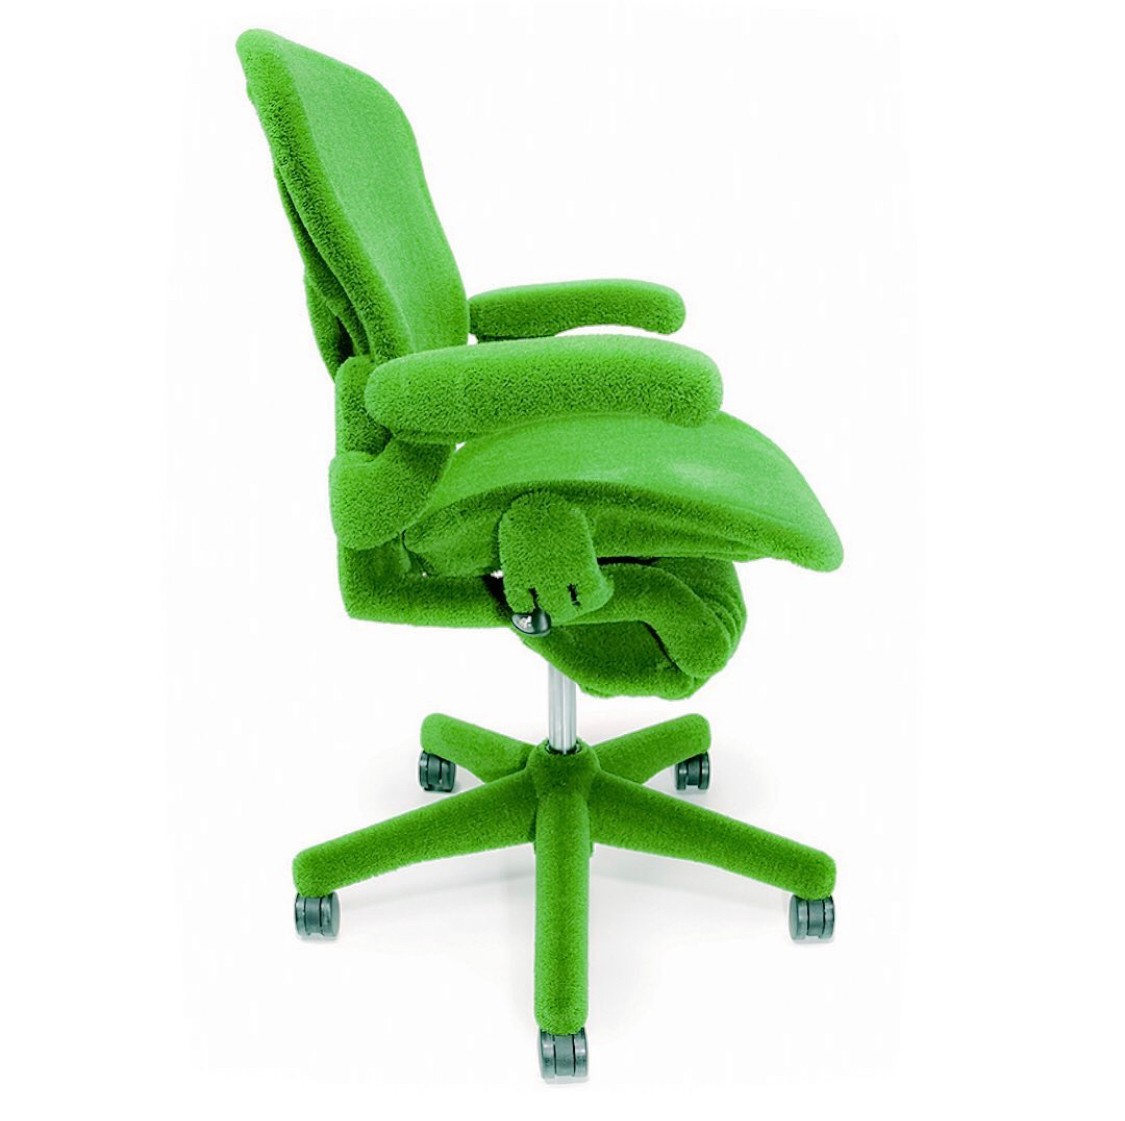 Зеленый миллер. Кресло компьютерное зеленое. Салатовое кресло. Стул компьютерный зеленый. Кресло зеленого цвета.